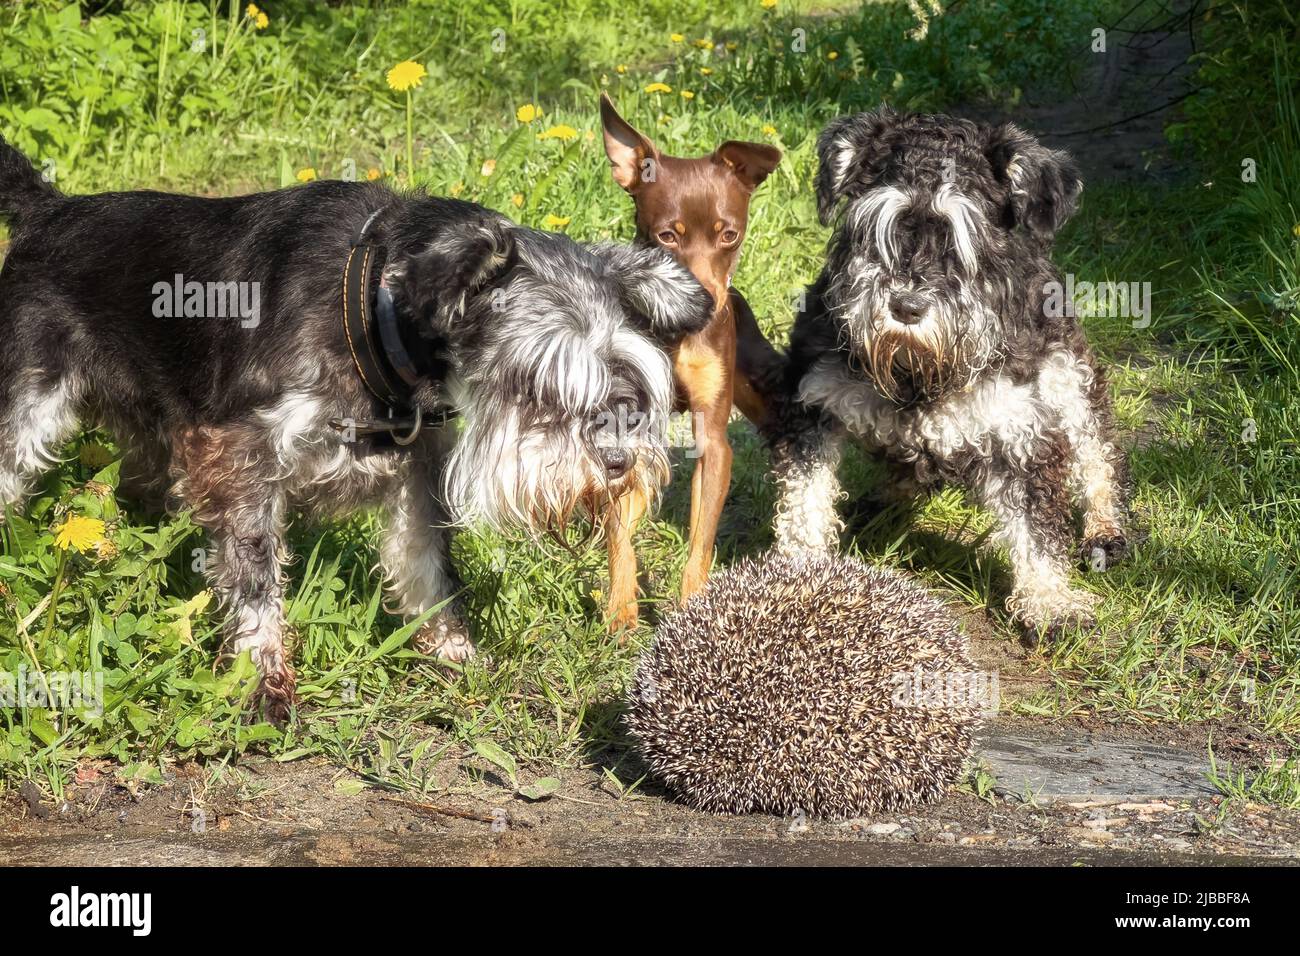 Drei Hunde bellen auf einem Igel. Wildtiere tragen häufig Infektionskrankheiten wie Staupe. Stockfoto